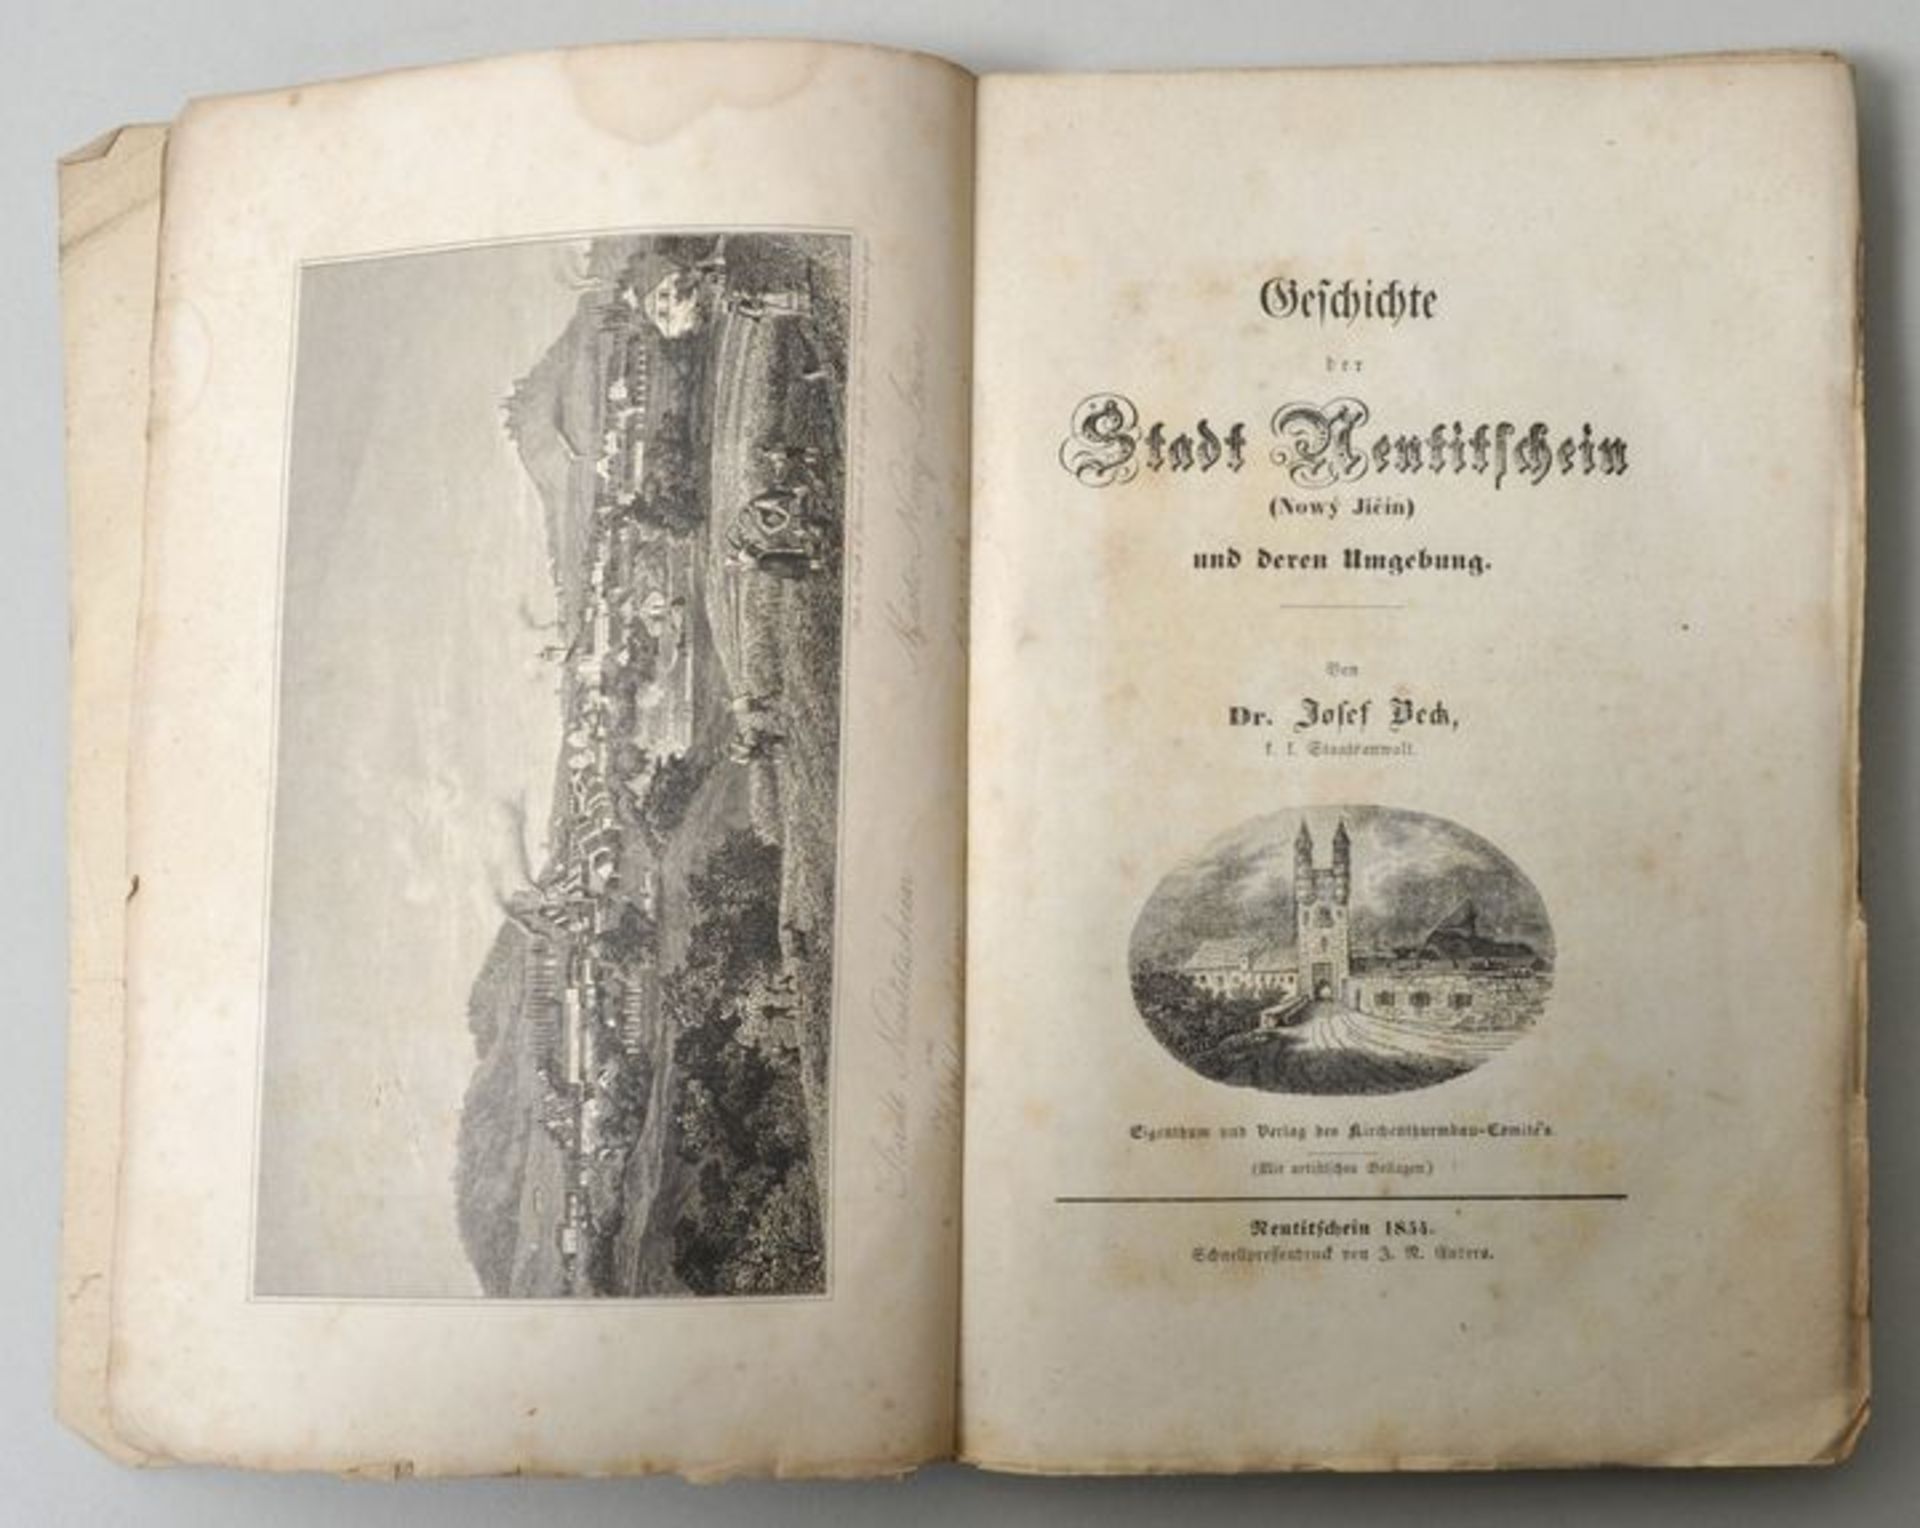 BuchBeck, Josef: Geschichte der Stadt Neutitschein (Nový Jicín). Neutitschein: Eigenverlag des - Bild 2 aus 2